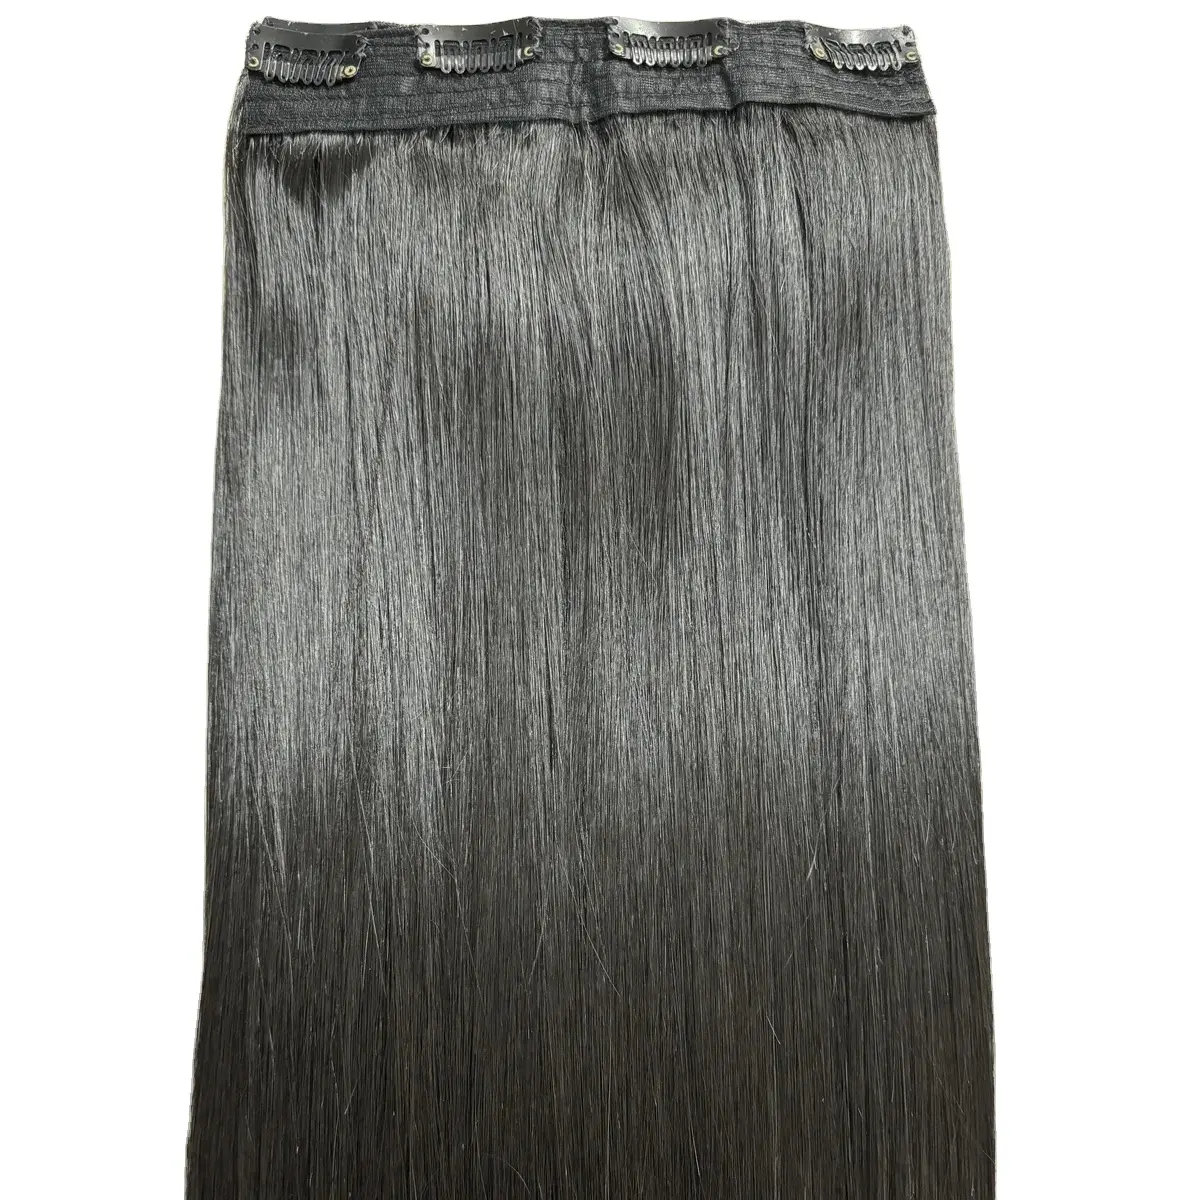 Высококачественные заколки для волос вьетнамские здоровые волосы для наращивания 100% натуральных волос от фабрики